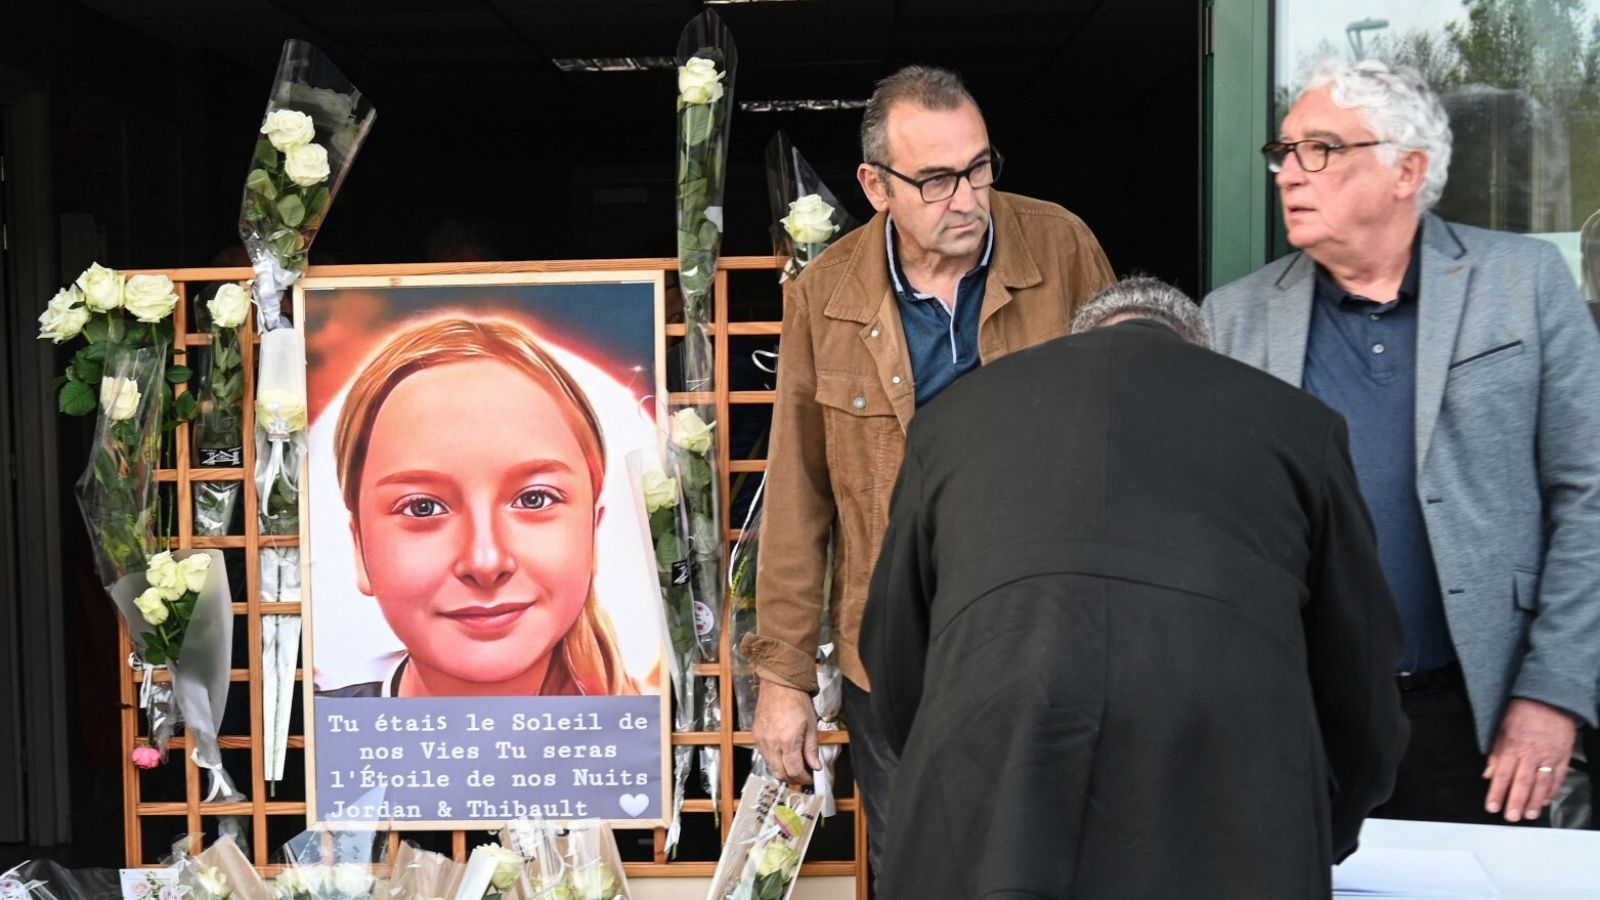 Ciudadanos depositan flores en un evento en homenaje a Lola, la menor asesinada en París